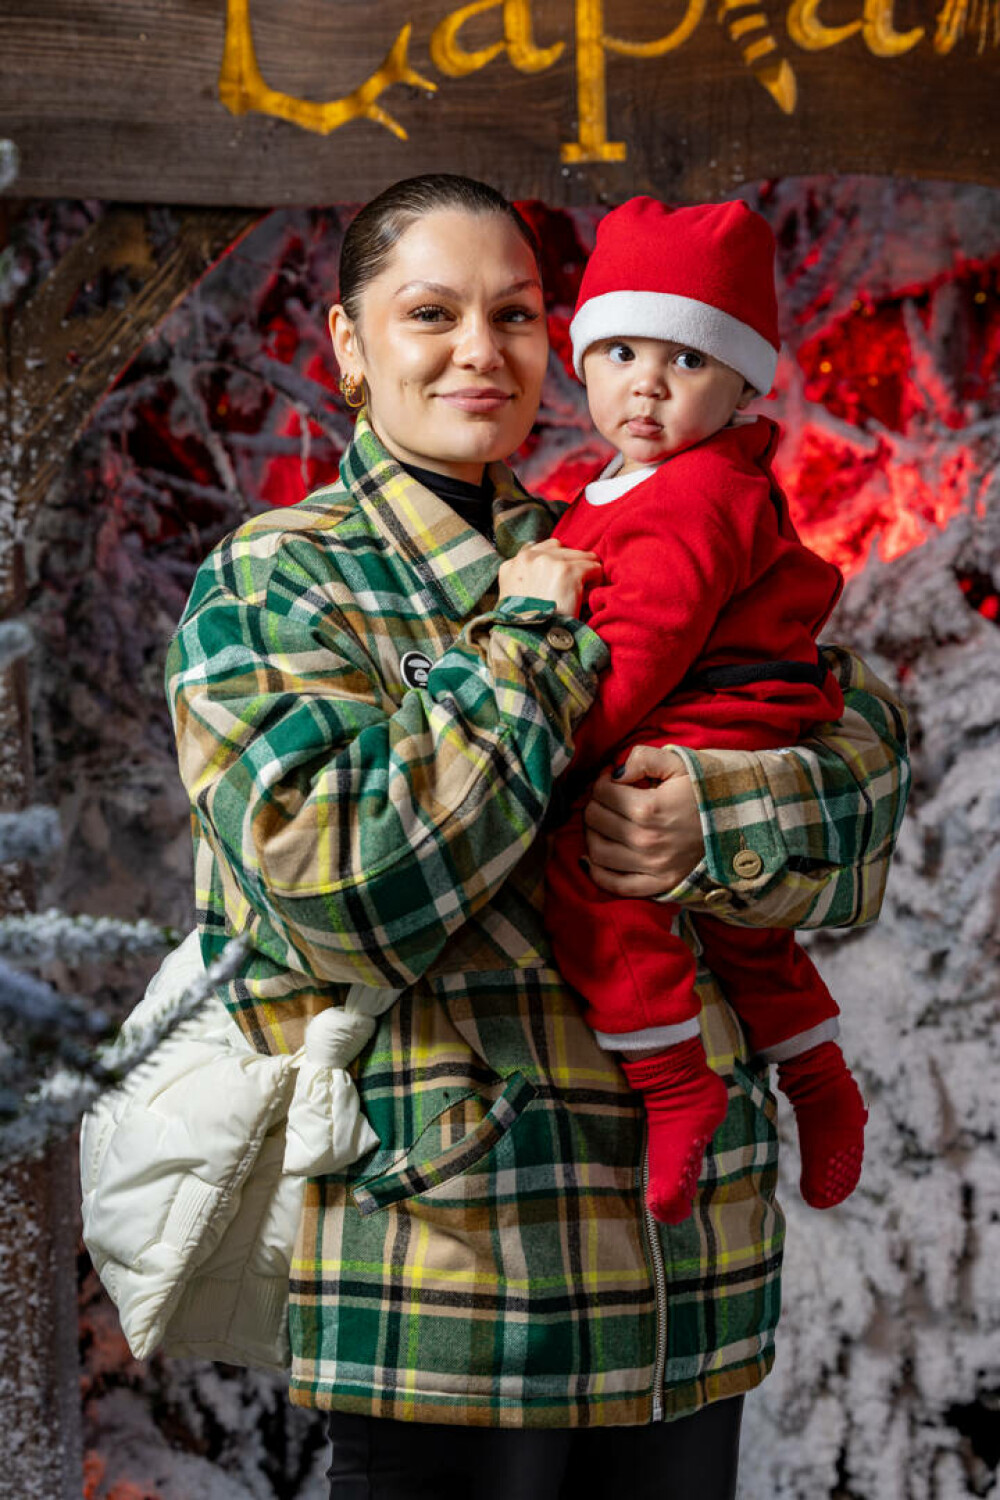 Imagini emoționante cu Jessie J și fiul ei. Cântăreața a fost la casa lui Moș Crăciun alături de familia ei. FOTO - Imaginea 8